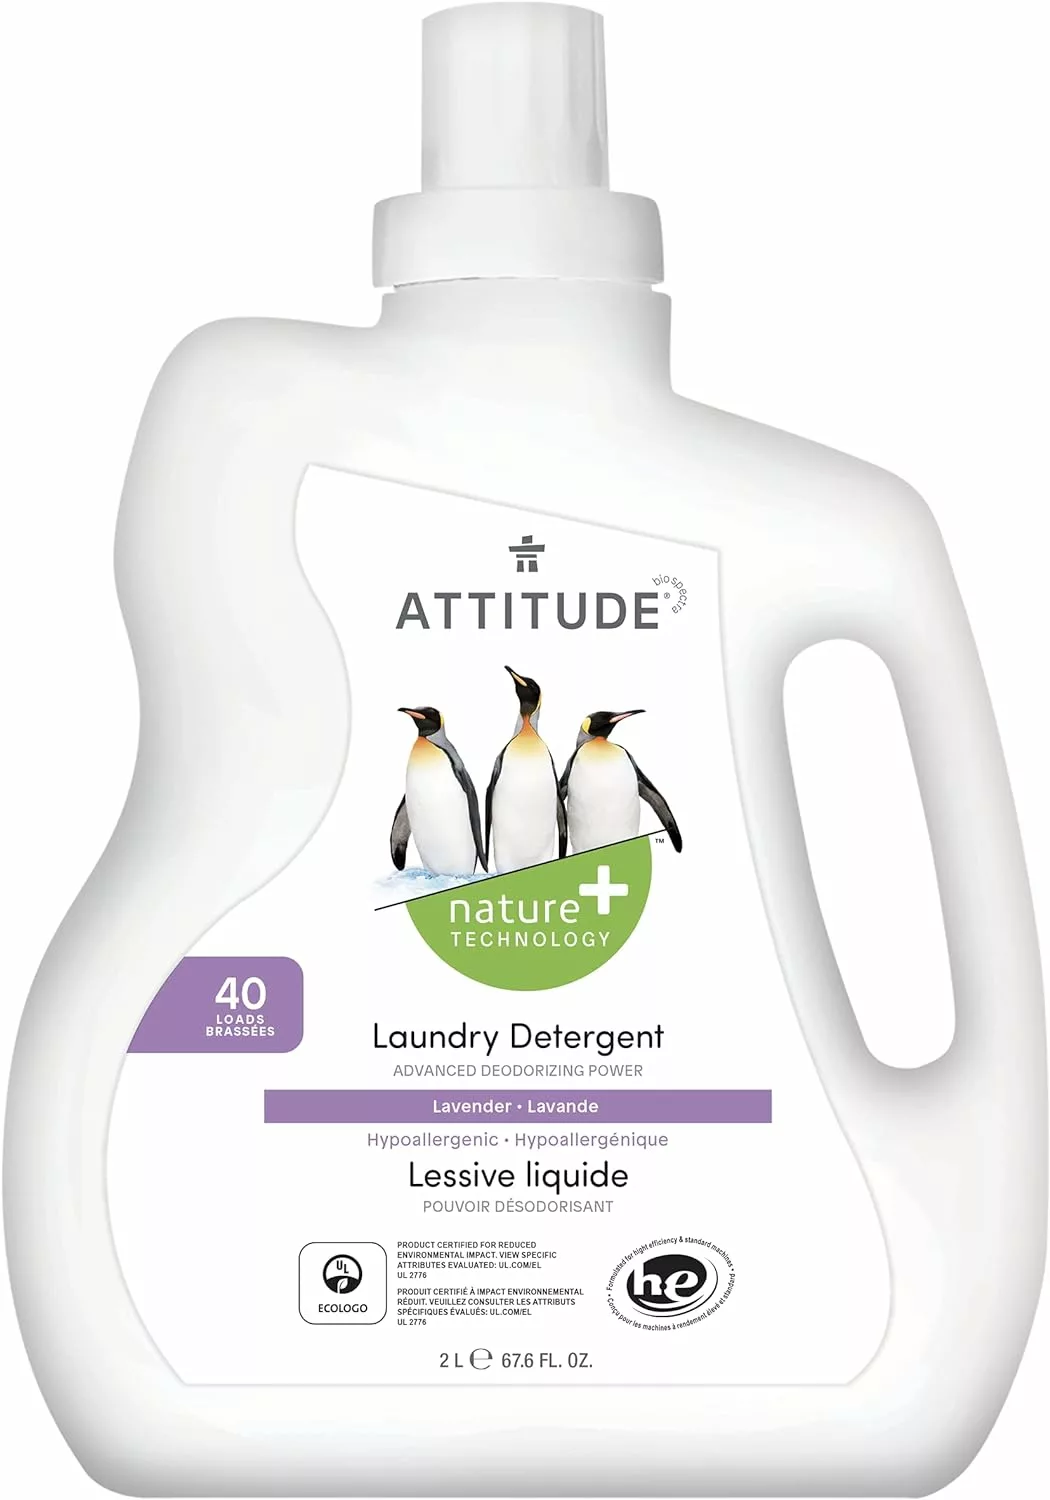 Attitude laundry detergent